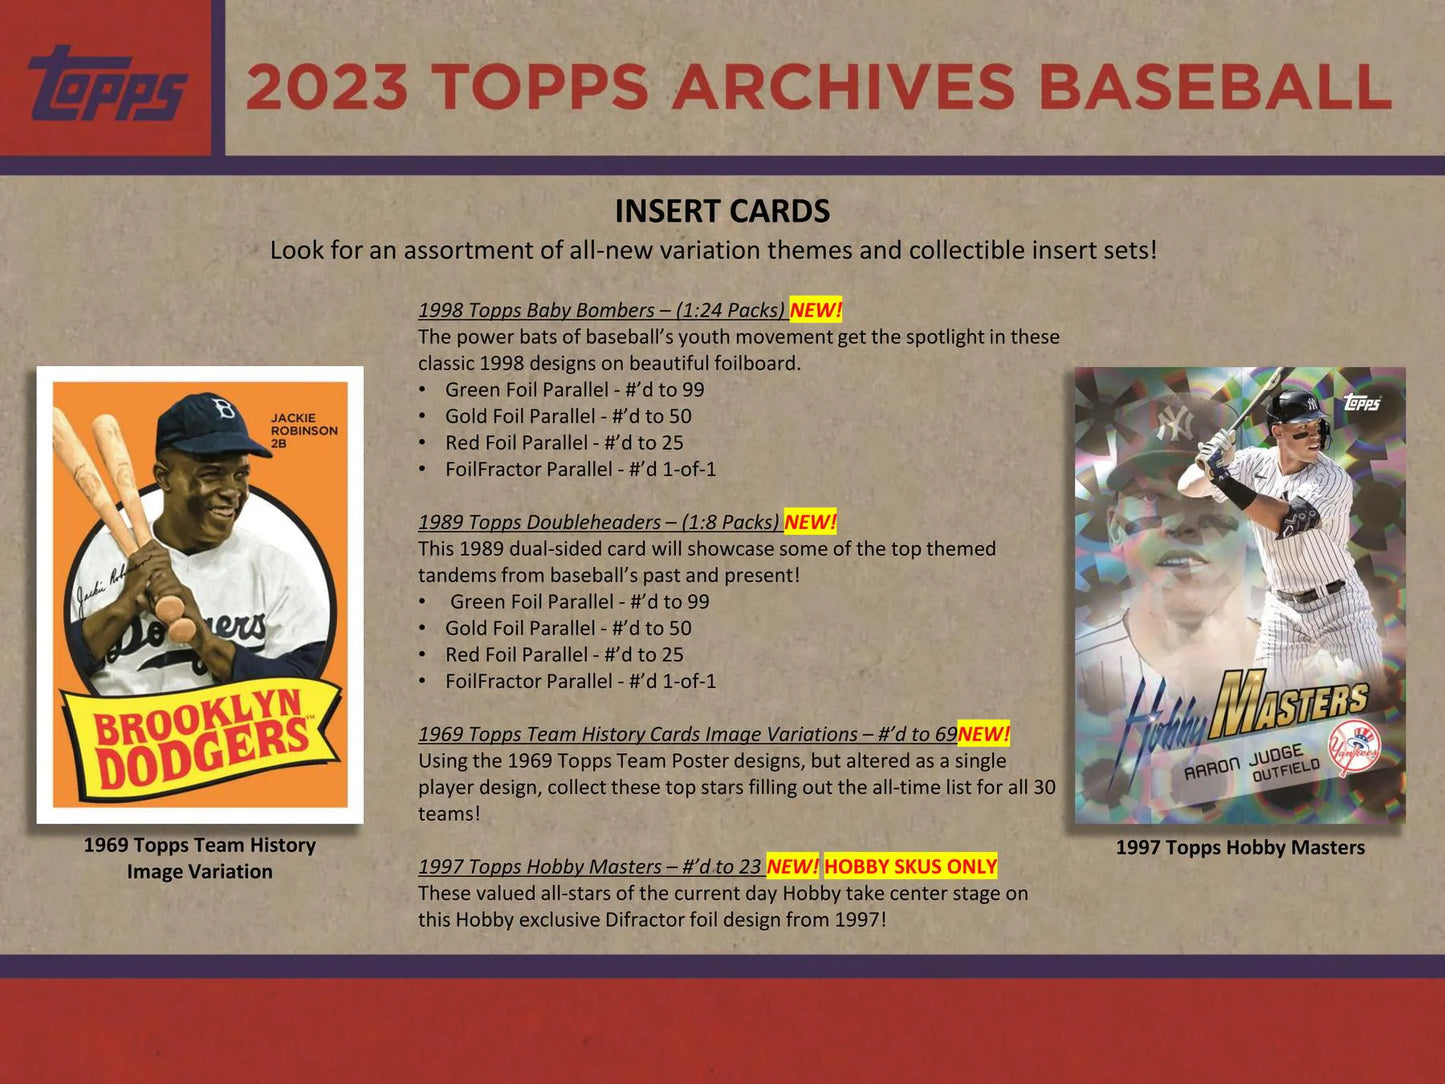 2023 Topps Archives Baseball Hobby 10-Box Case (Factory Fresh)